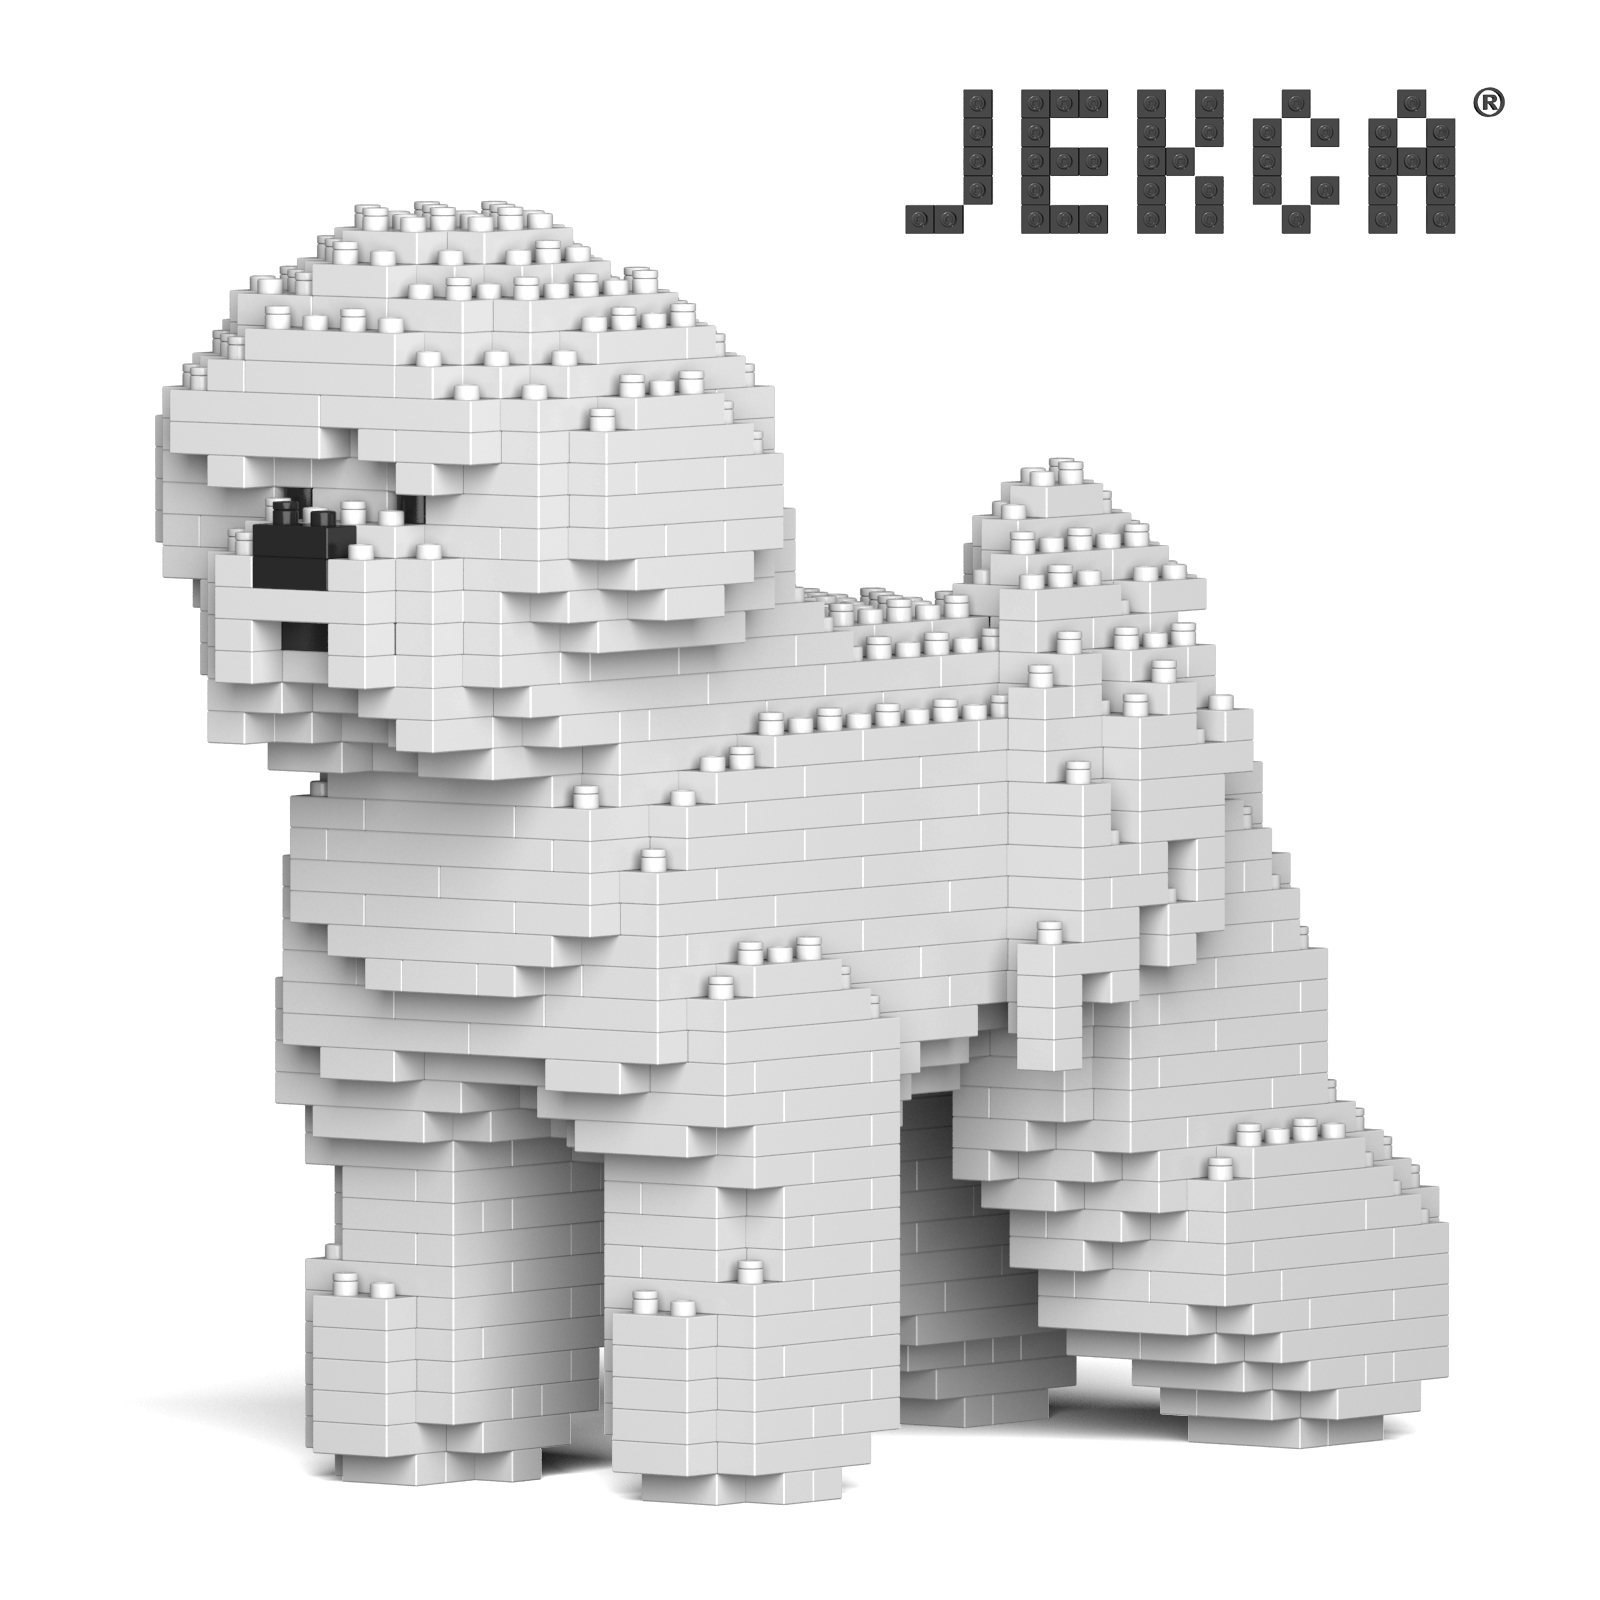 JEKCA Jakob 곰 개 마이크로 드릴링 플러그인 빌딩 블록 애완 동물 용품 교육 장난감 생일 선물